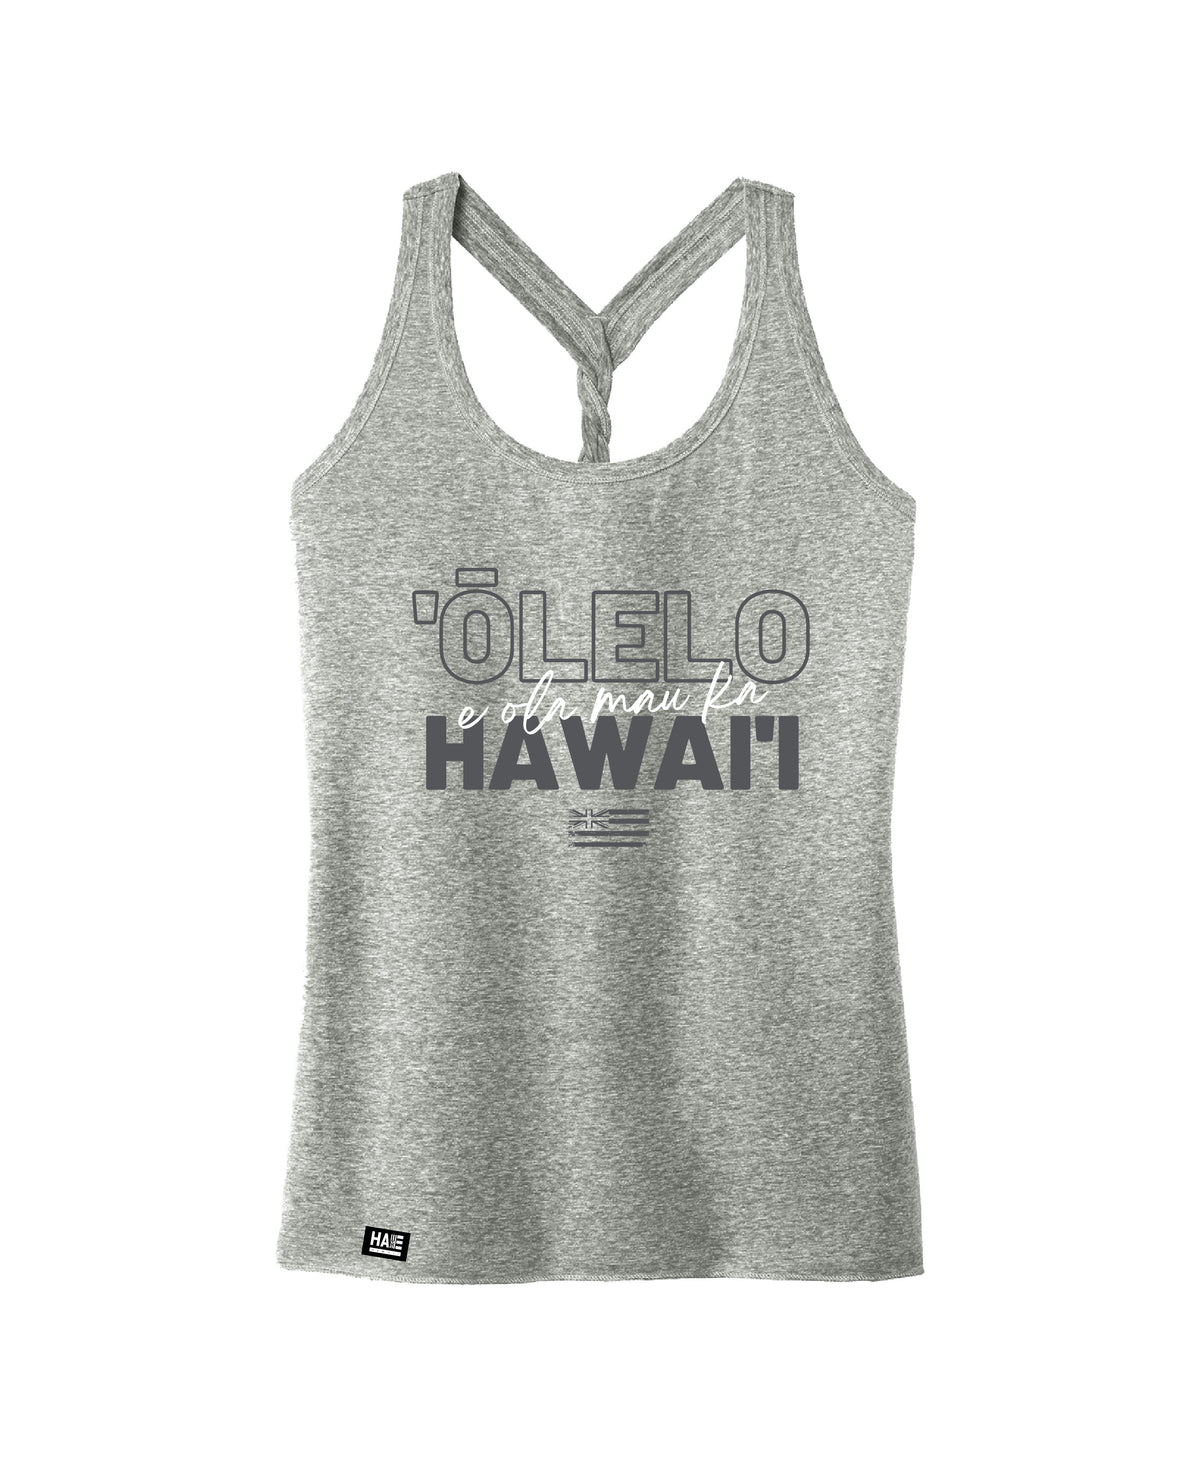 Pop-Up Mākeke - Hae Hawaii-WP - E Ola Mau Ka ʻŌlelo Hawaiʻi Women&#39;s Tank Top